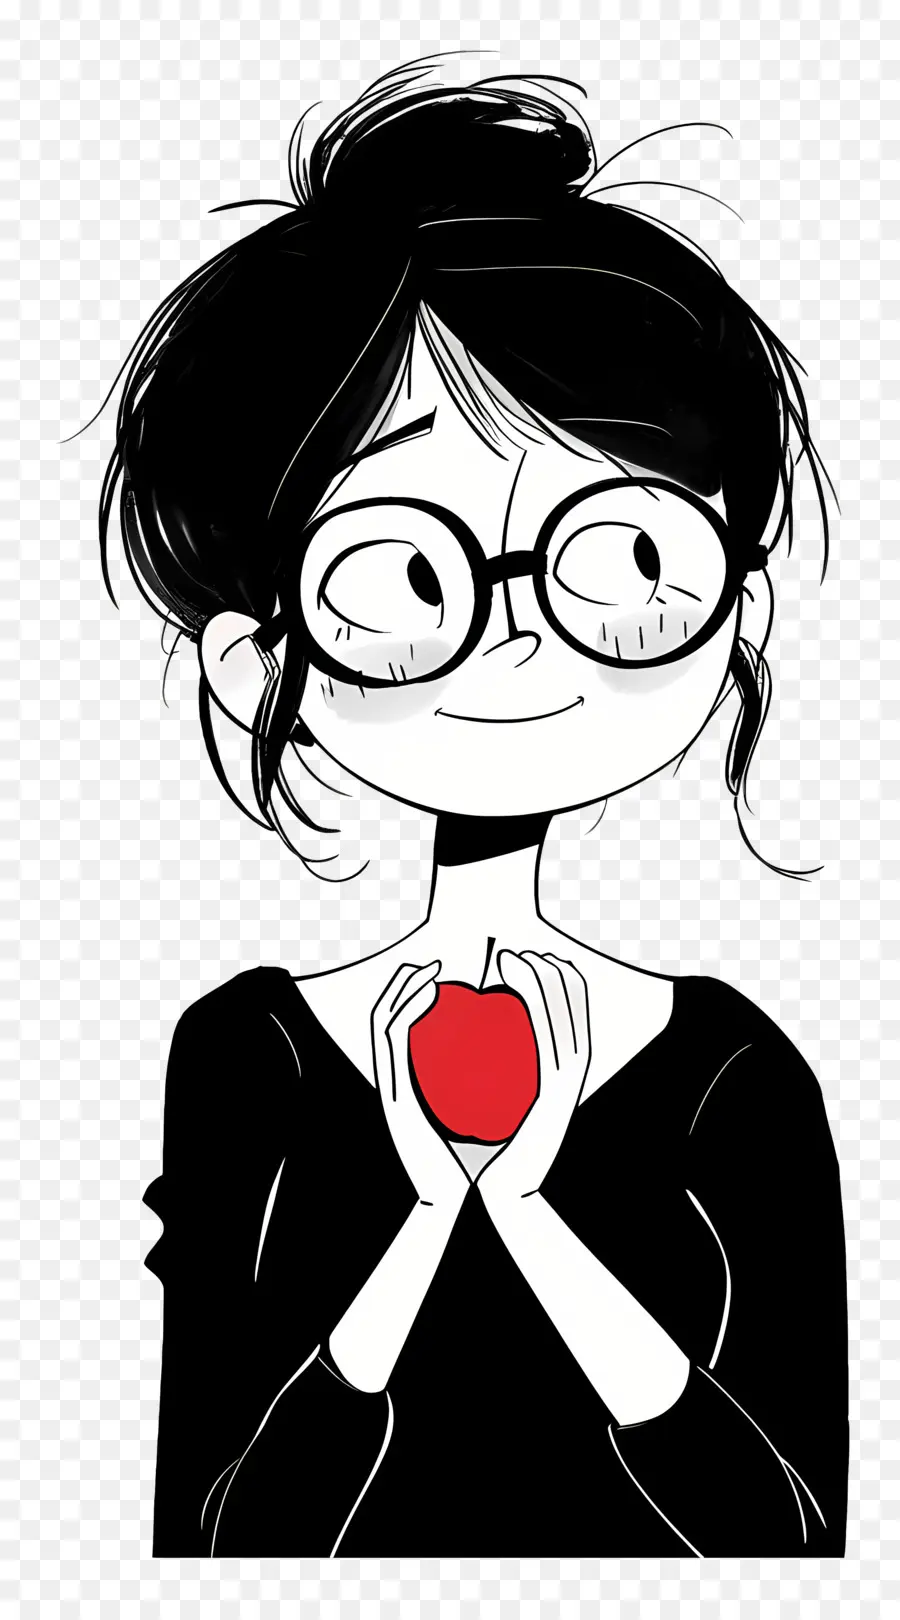 bicchieri - Persona con occhiali che tengono in mano la mela